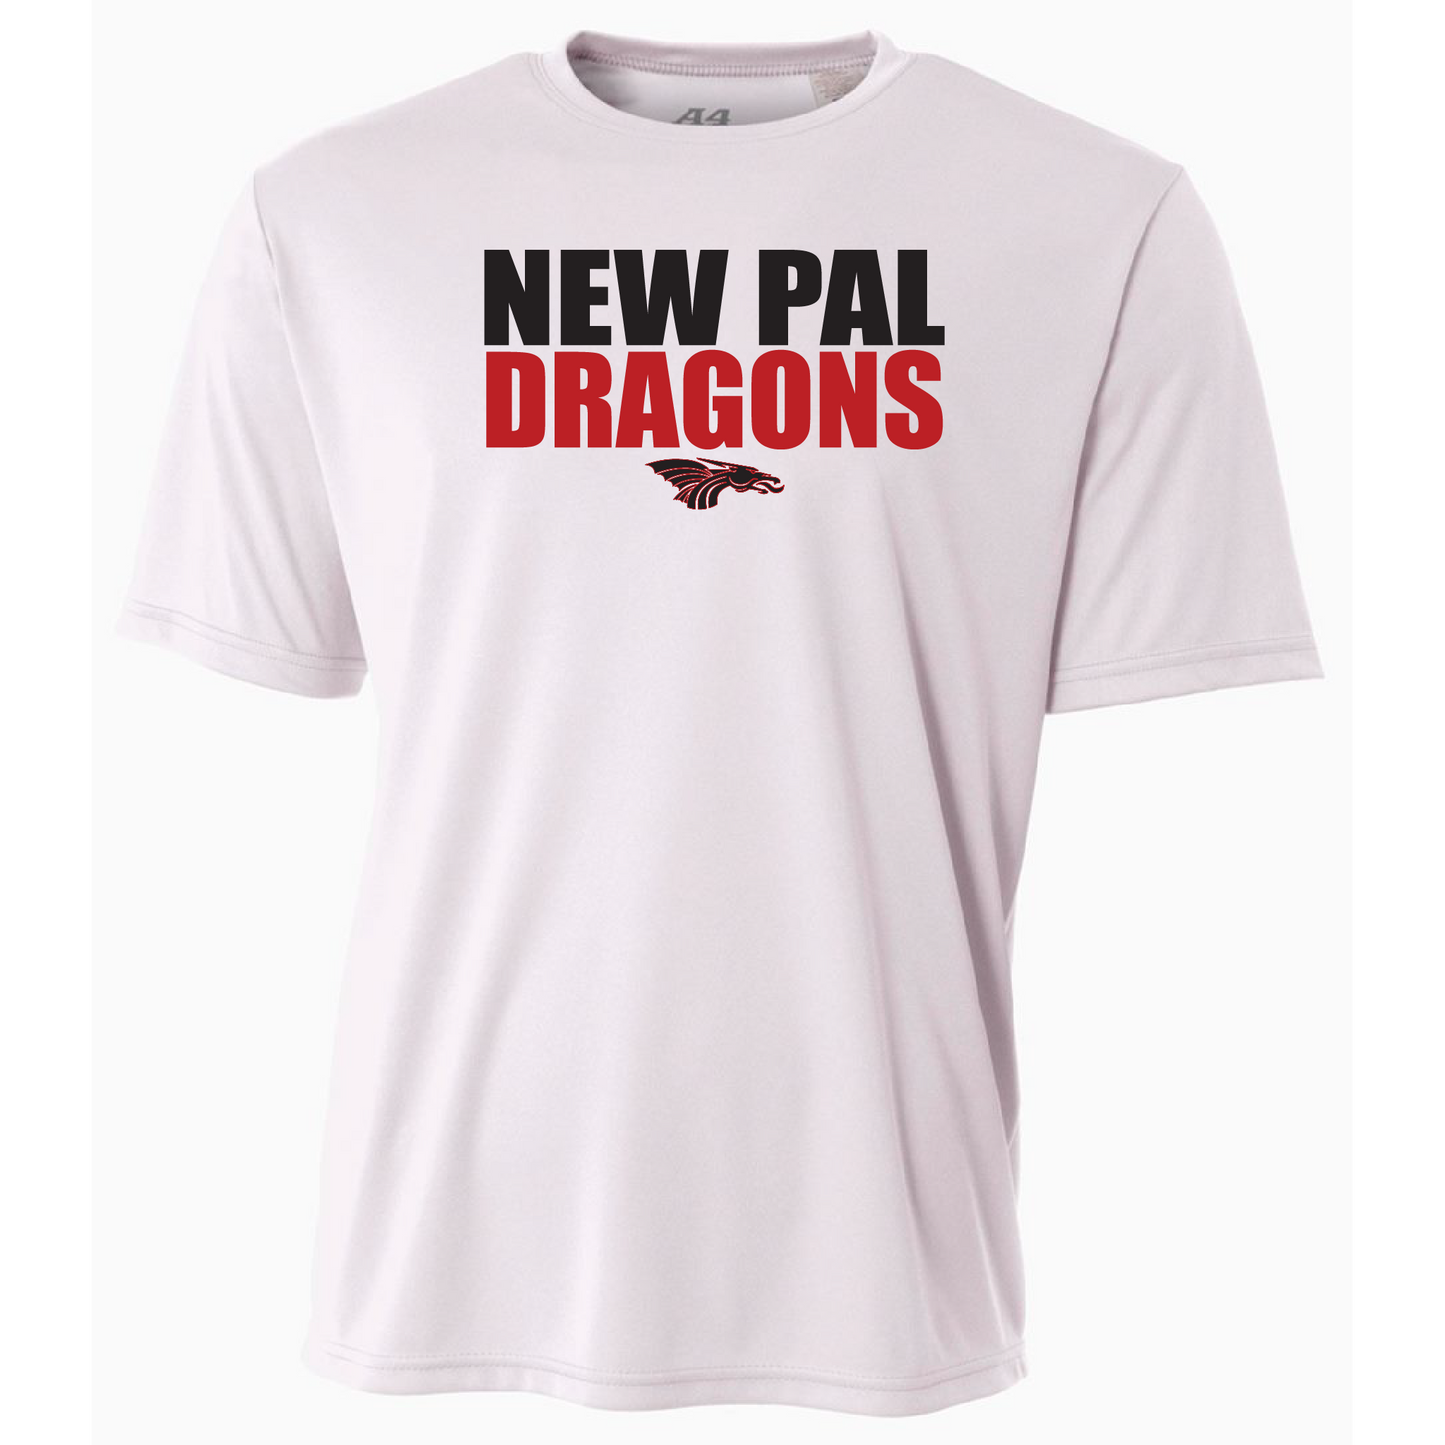 Mens S/S T-Shirt - New Pal Dragons